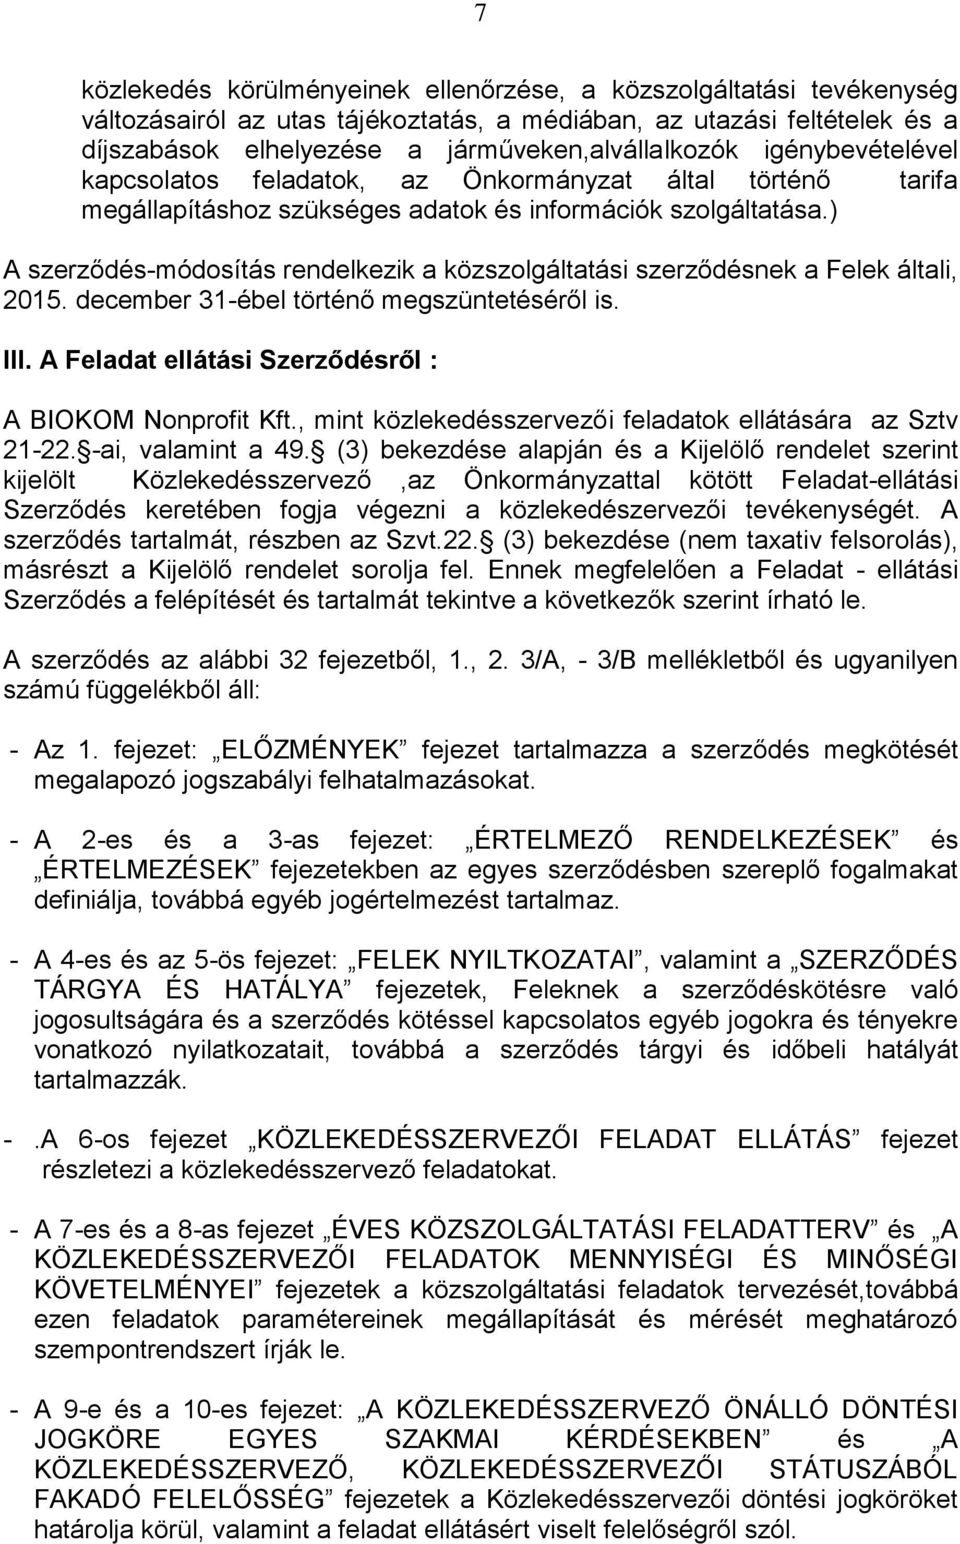 ) A szerződés-módosítás rendelkezik a közszolgáltatási szerződésnek a Felek általi, 2015. december 31-ébel történő megszüntetéséről is. III. A Feladat ellátási Szerződésről : A BIOKOM Nonprofit Kft.